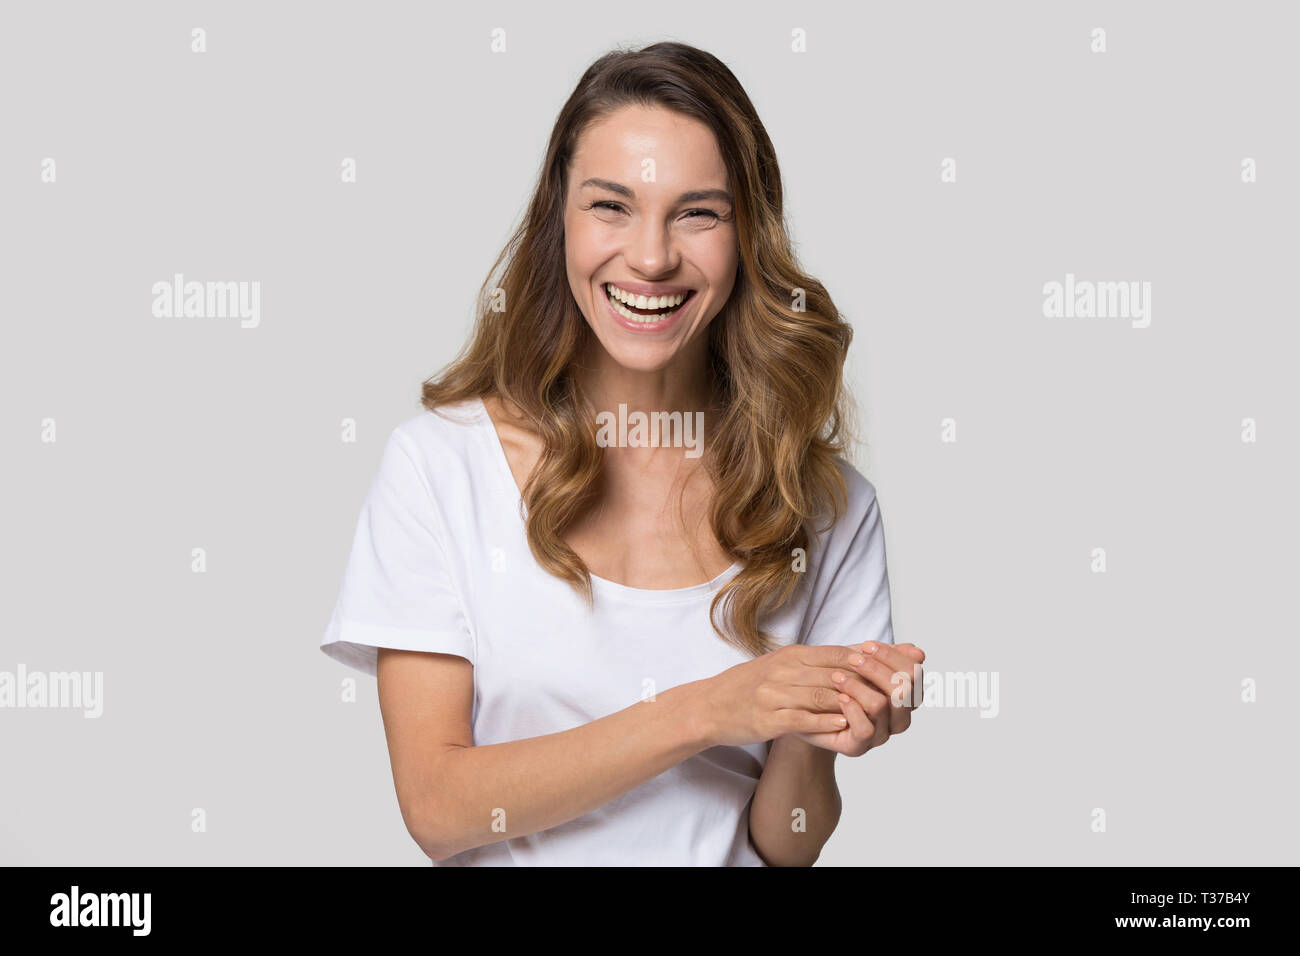 Frau Suchen an Kamera lachend fühlt sich glücklich Studio shot Stockfoto